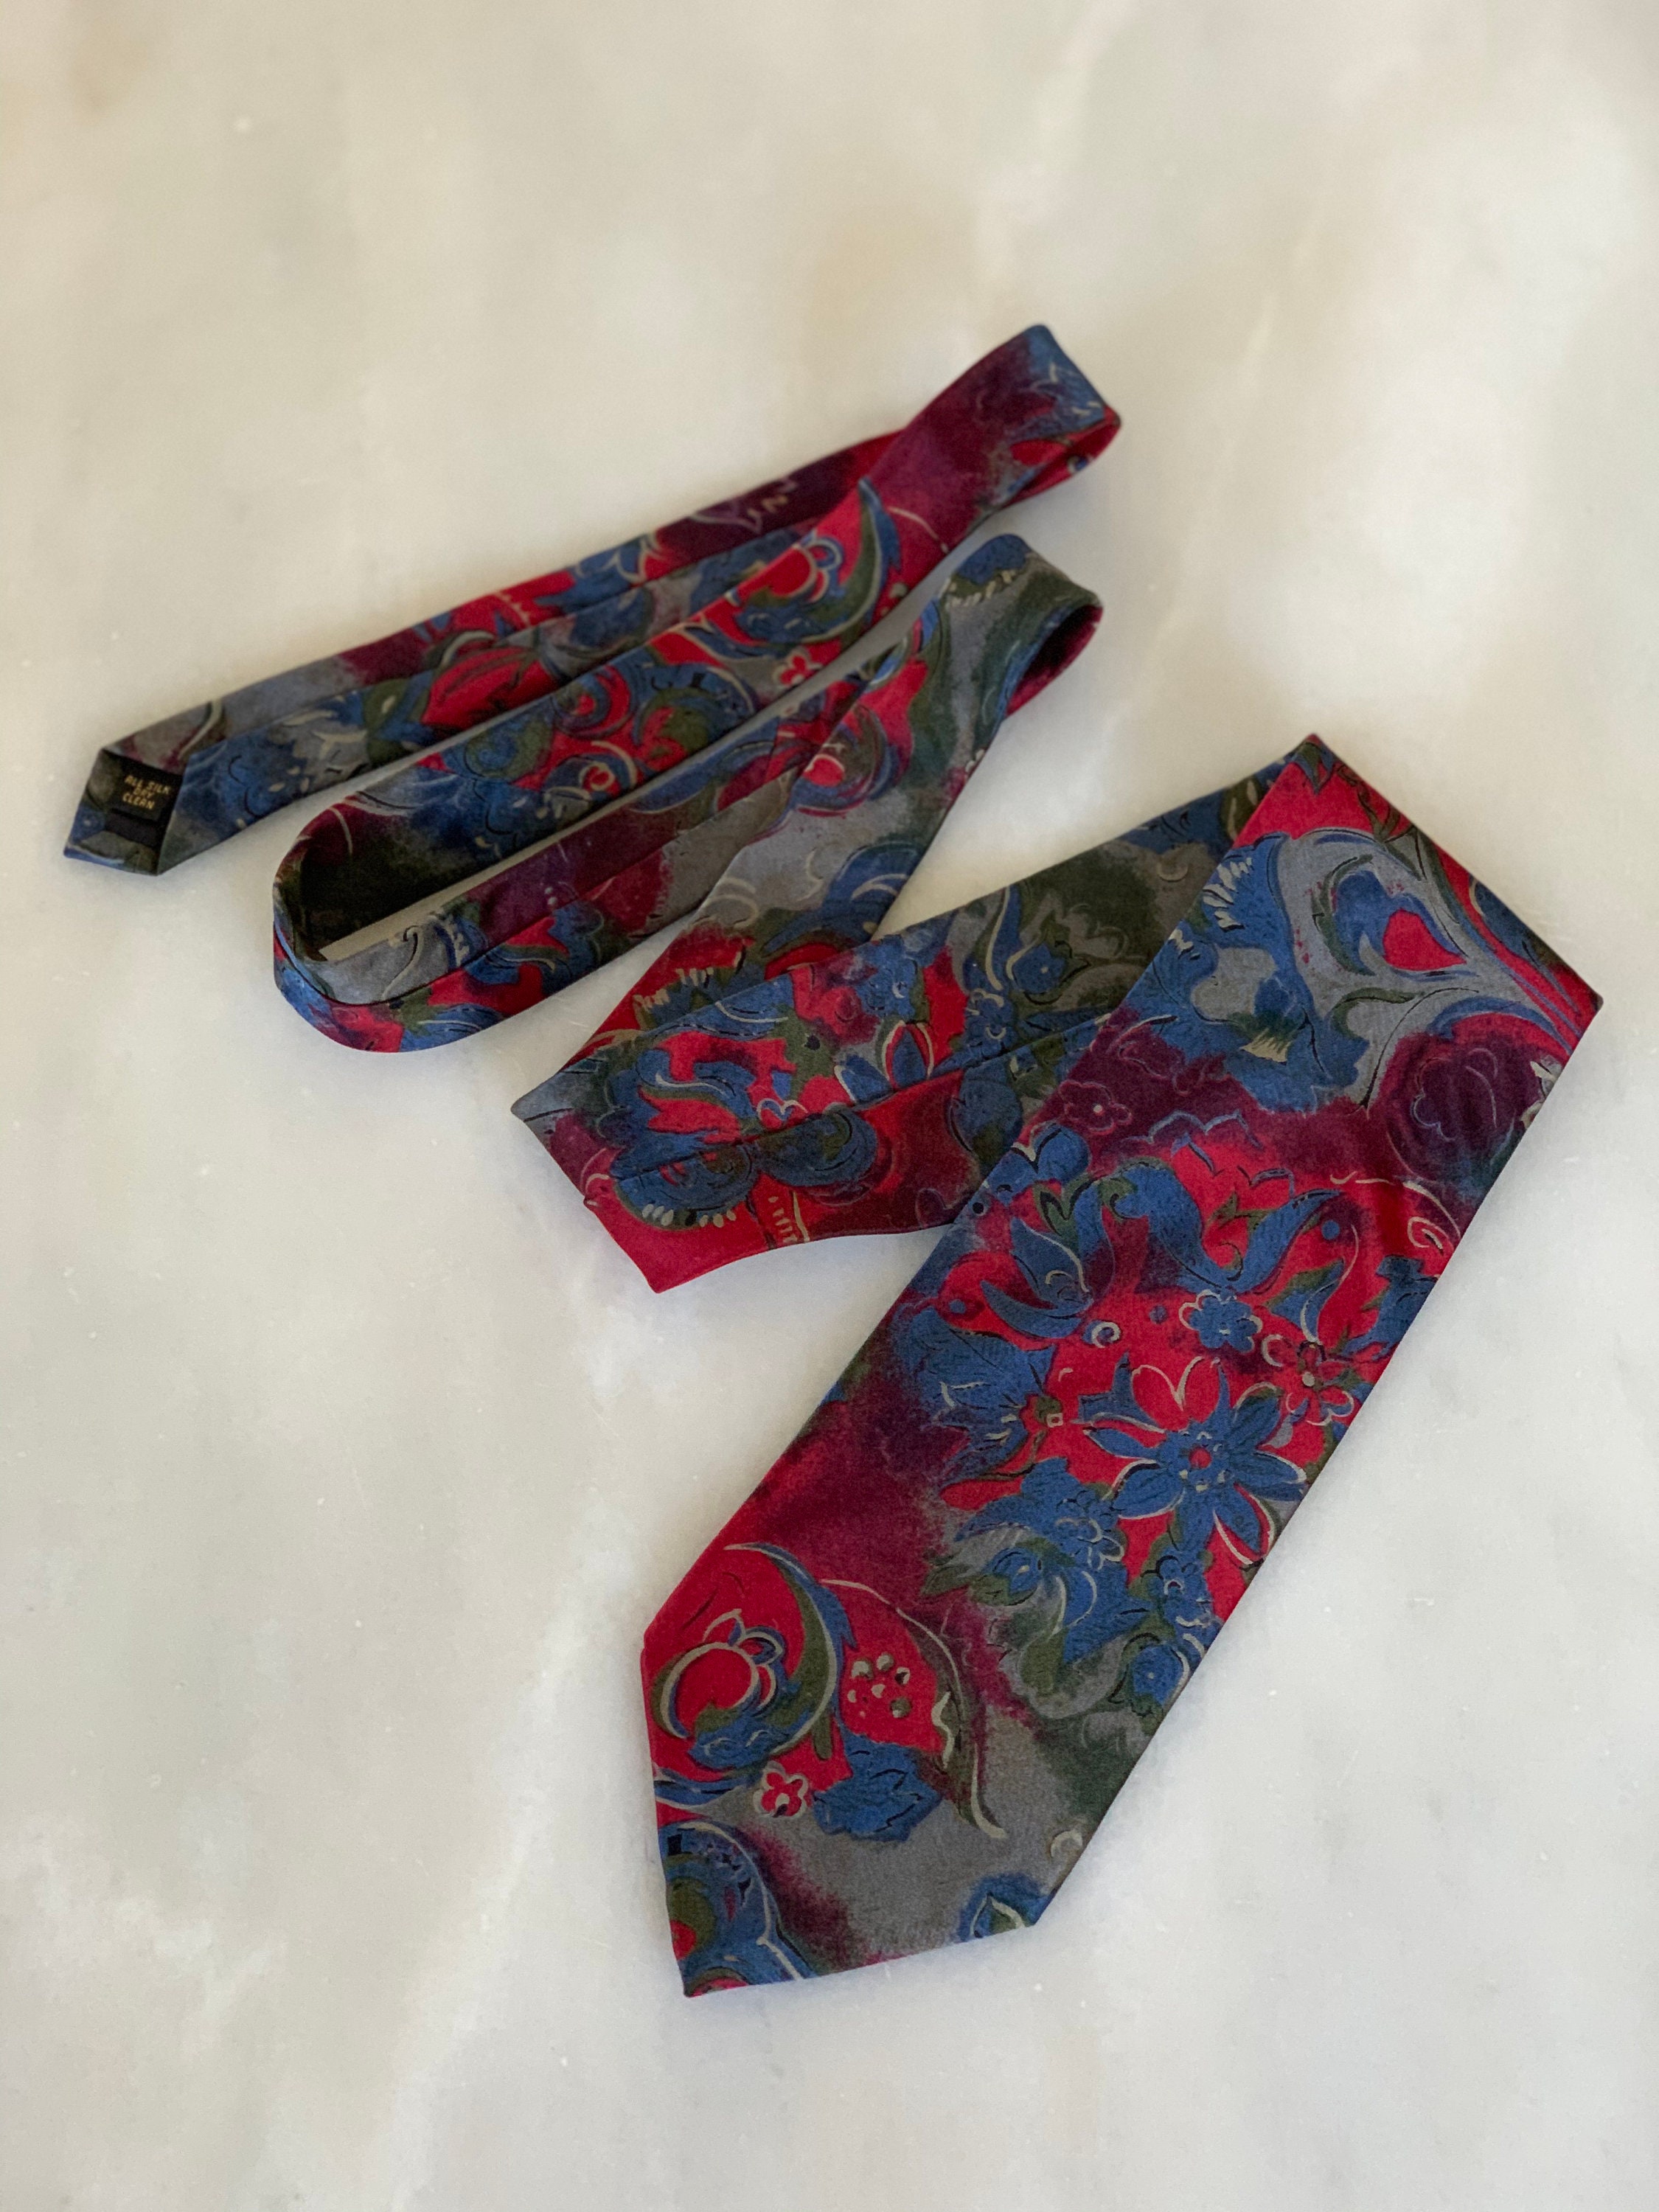 Necktie Vintage Bill Blass for the Bon Marche Tie Silk Tie | Etsy